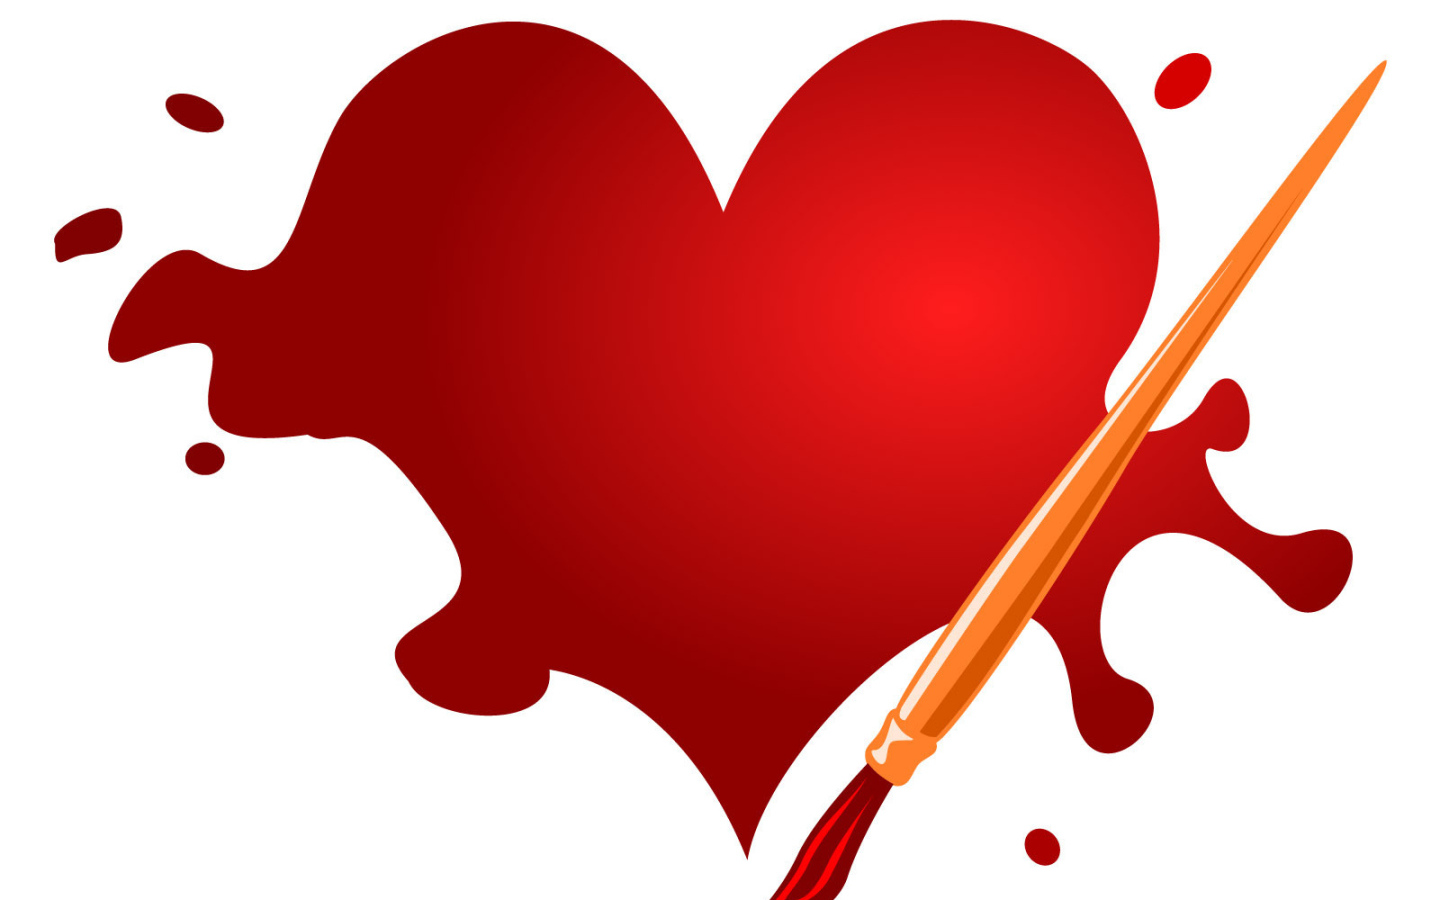 Нарисованное сердце на День Влюбленных 14 февраля